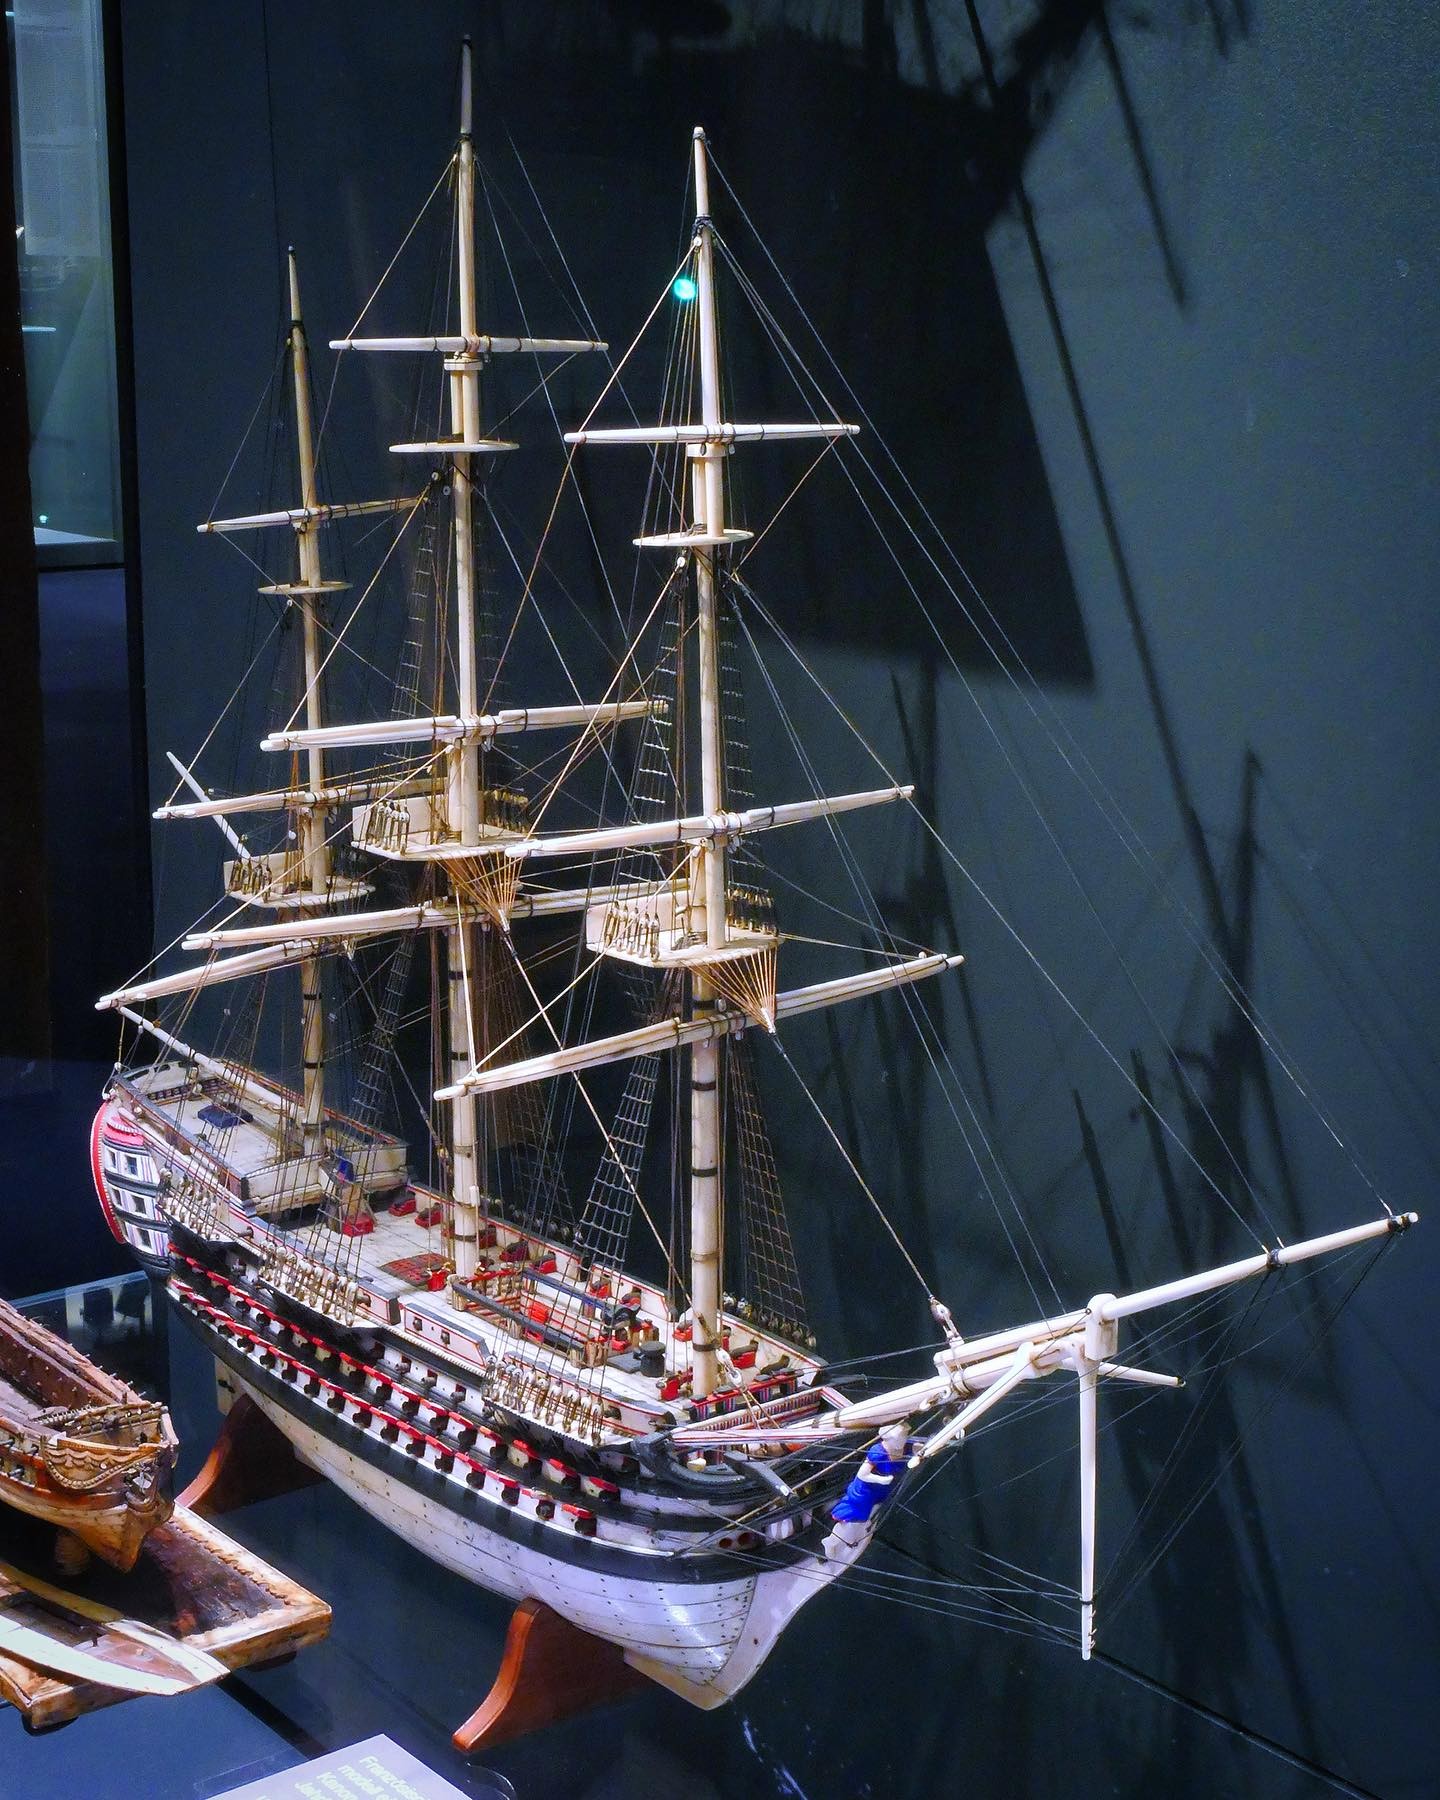 Linienschiff Santísima Trinidad (1796-1805). Dieses Knochenschiff-Modell stellt das spanische Linienschiff „Nuestra Señora de la Santísima Trinidad“ dar. Die meisten Knochenschiff-modelle aus den Koalitionskriegen werden französischen Kriegs-gefangenen in Großbritannien zugeschrieben. Wir haben guten Grund zu der Annahme, dass dieses Stück von spanischen Seeleuten gebaut wurde.